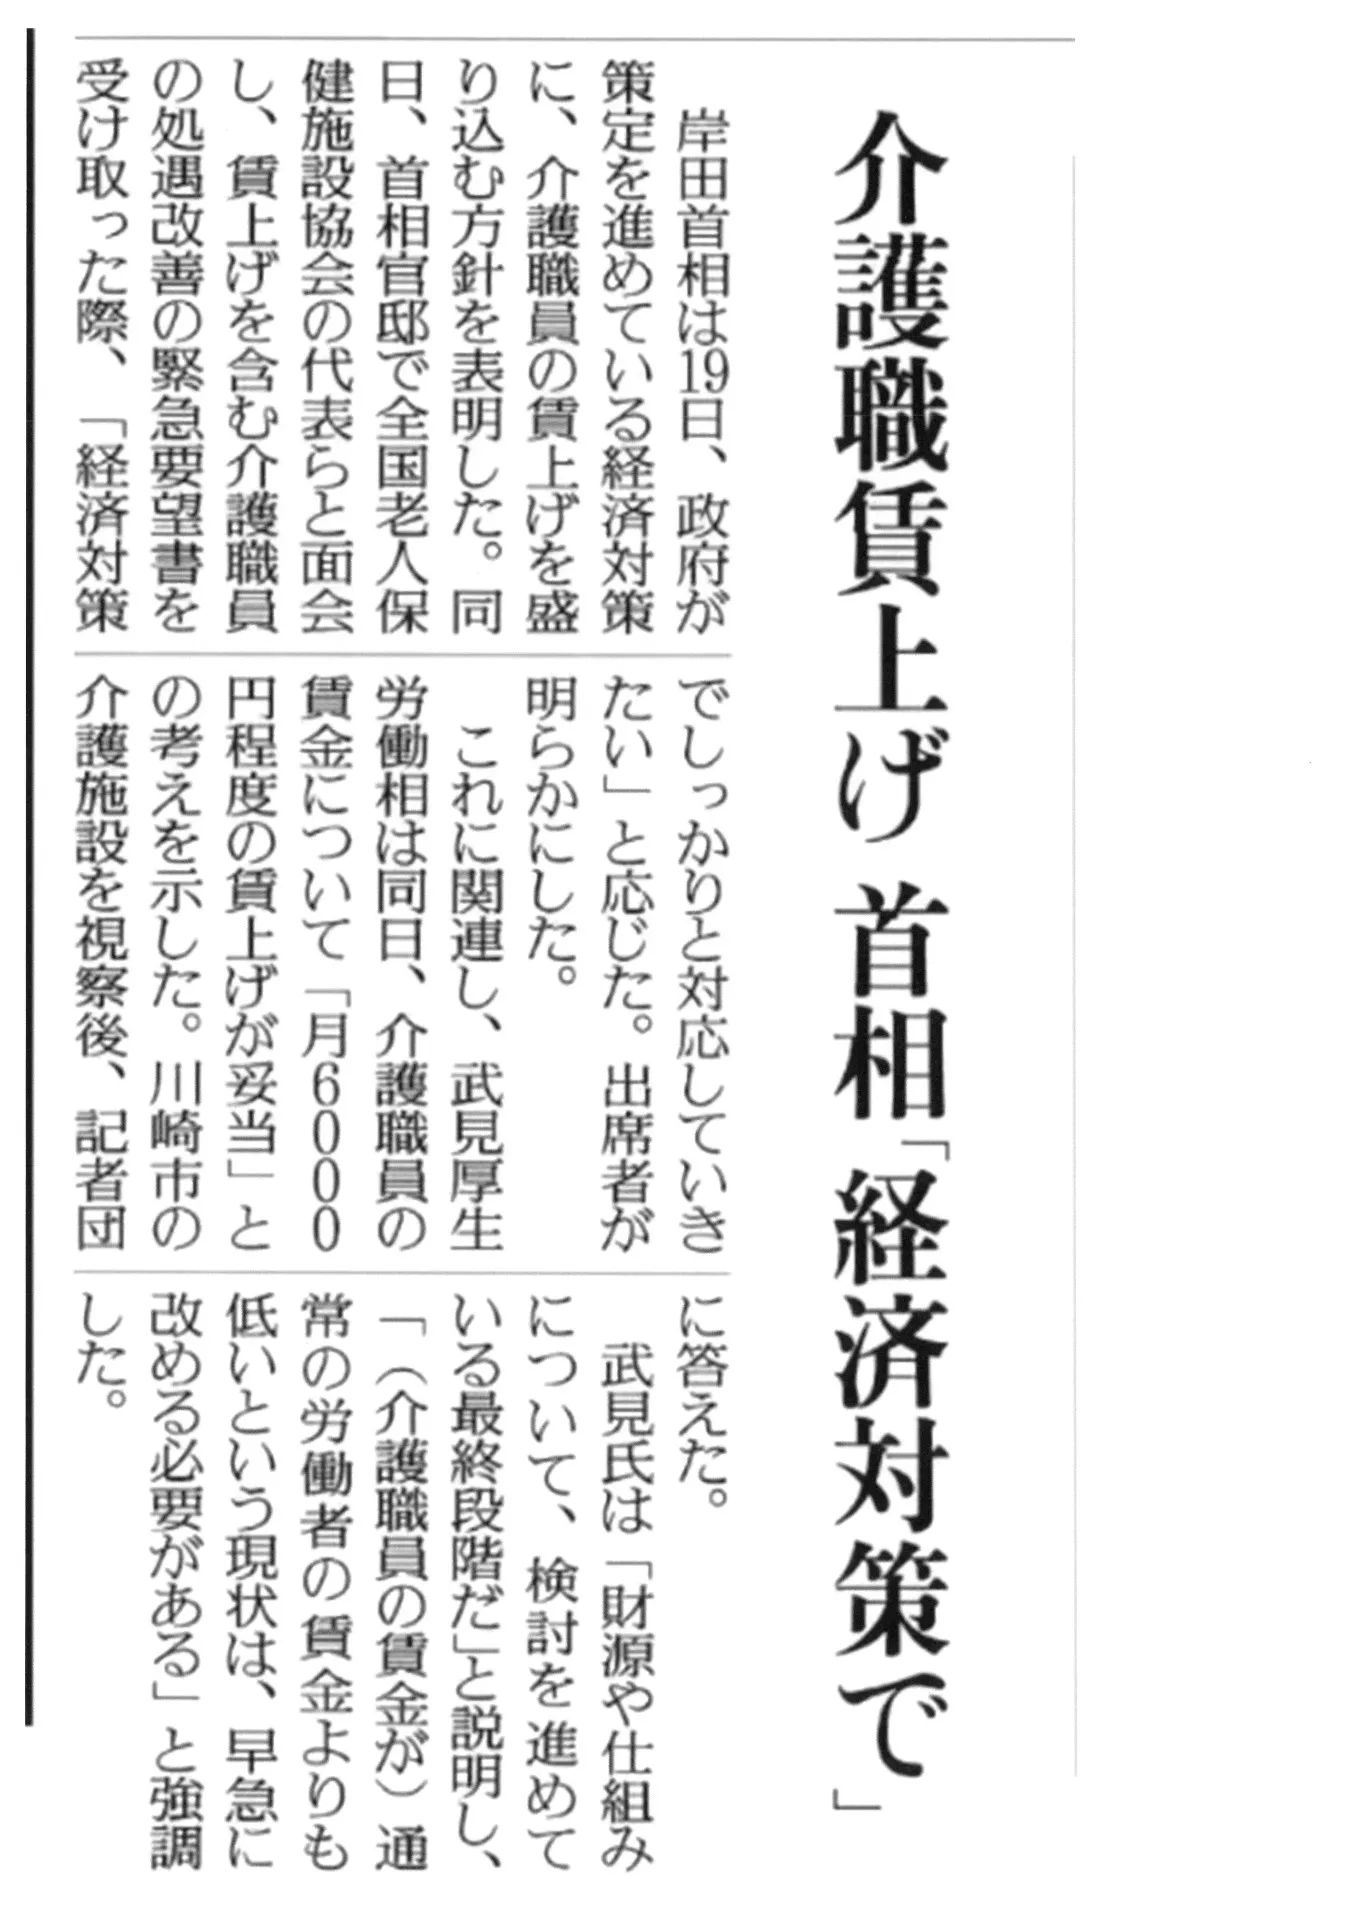 介護職賃上げ首相「経済対策で」　読売新聞10月20日朝刊